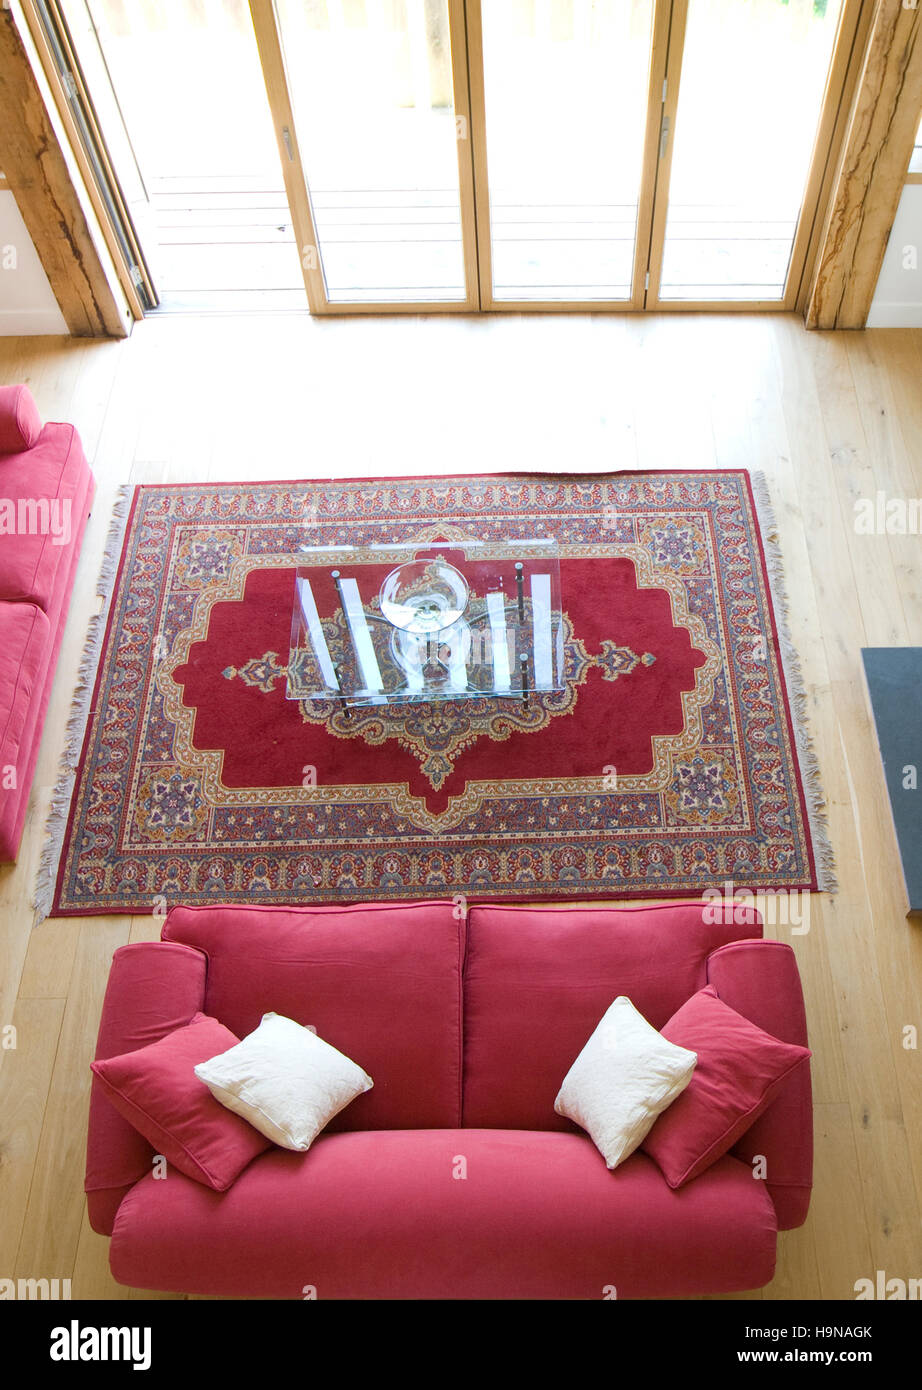 Red sofa in front of open doors, wooden floors. Stock Photo